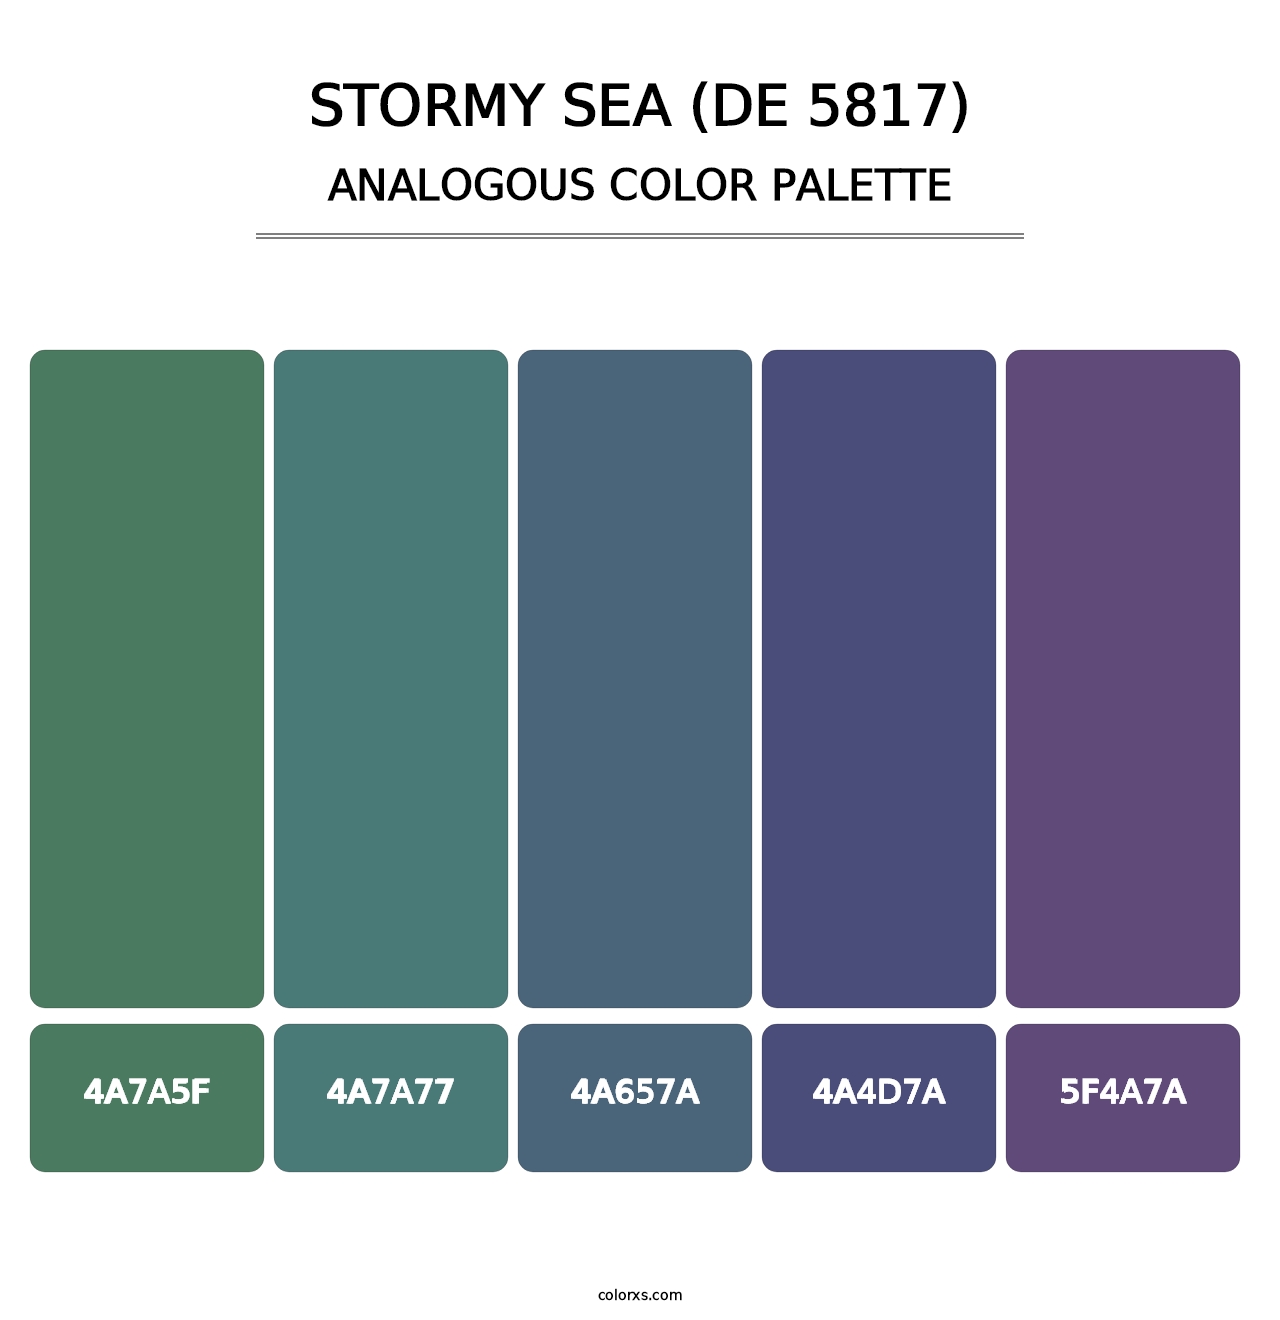 Stormy Sea (DE 5817) - Analogous Color Palette